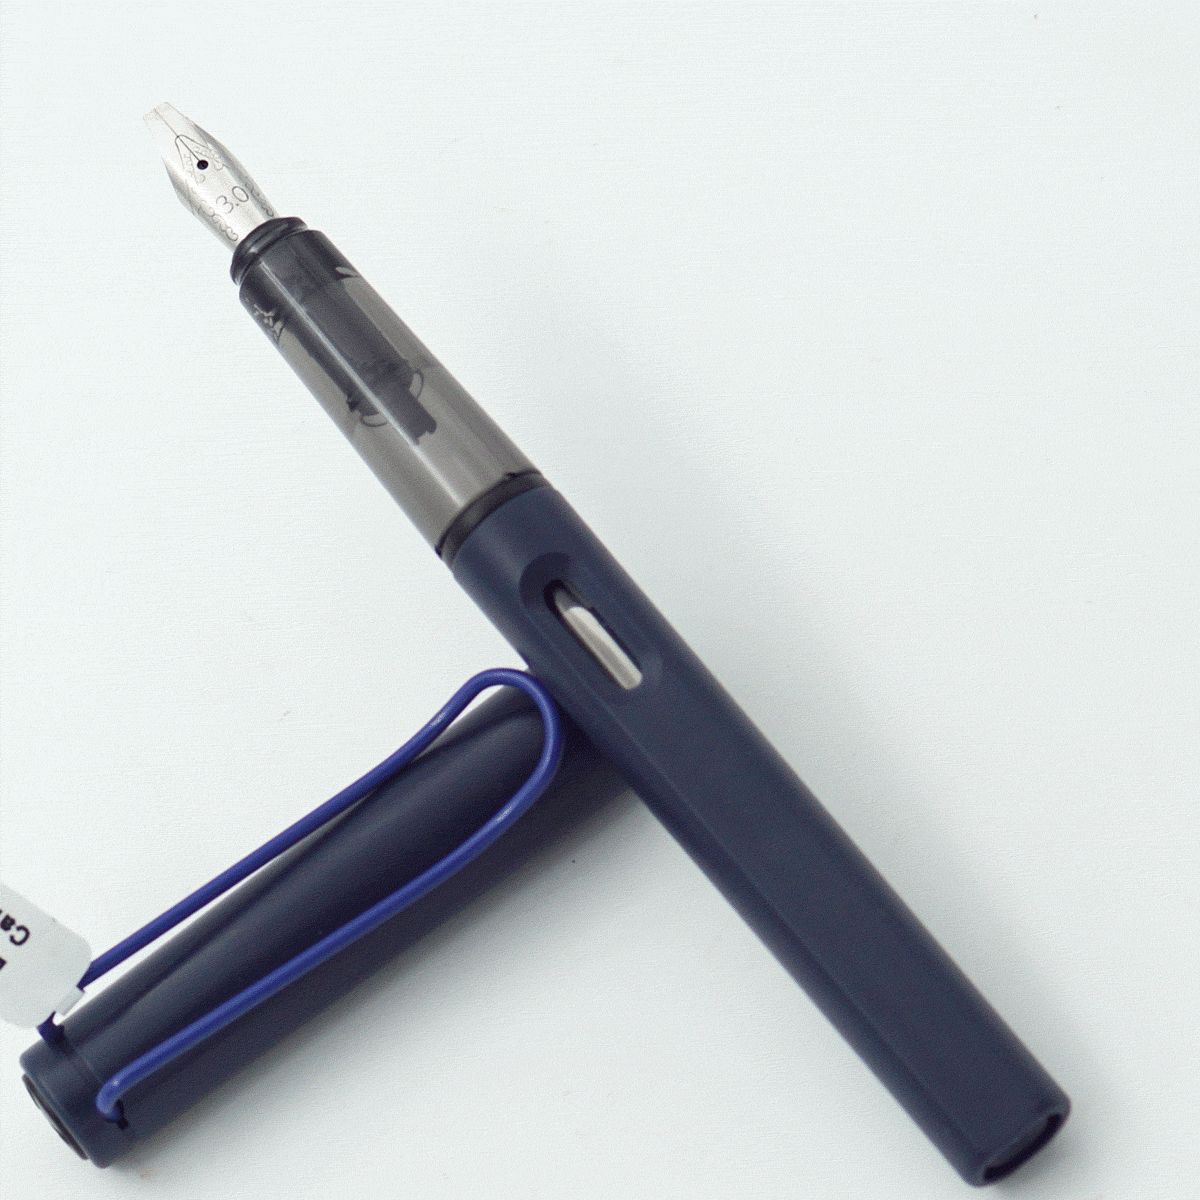 Luoshi 3987 Blue Color Body With Cap 3.0 Nib Converter Type Calligraphy Fountain Pen SKU 24235